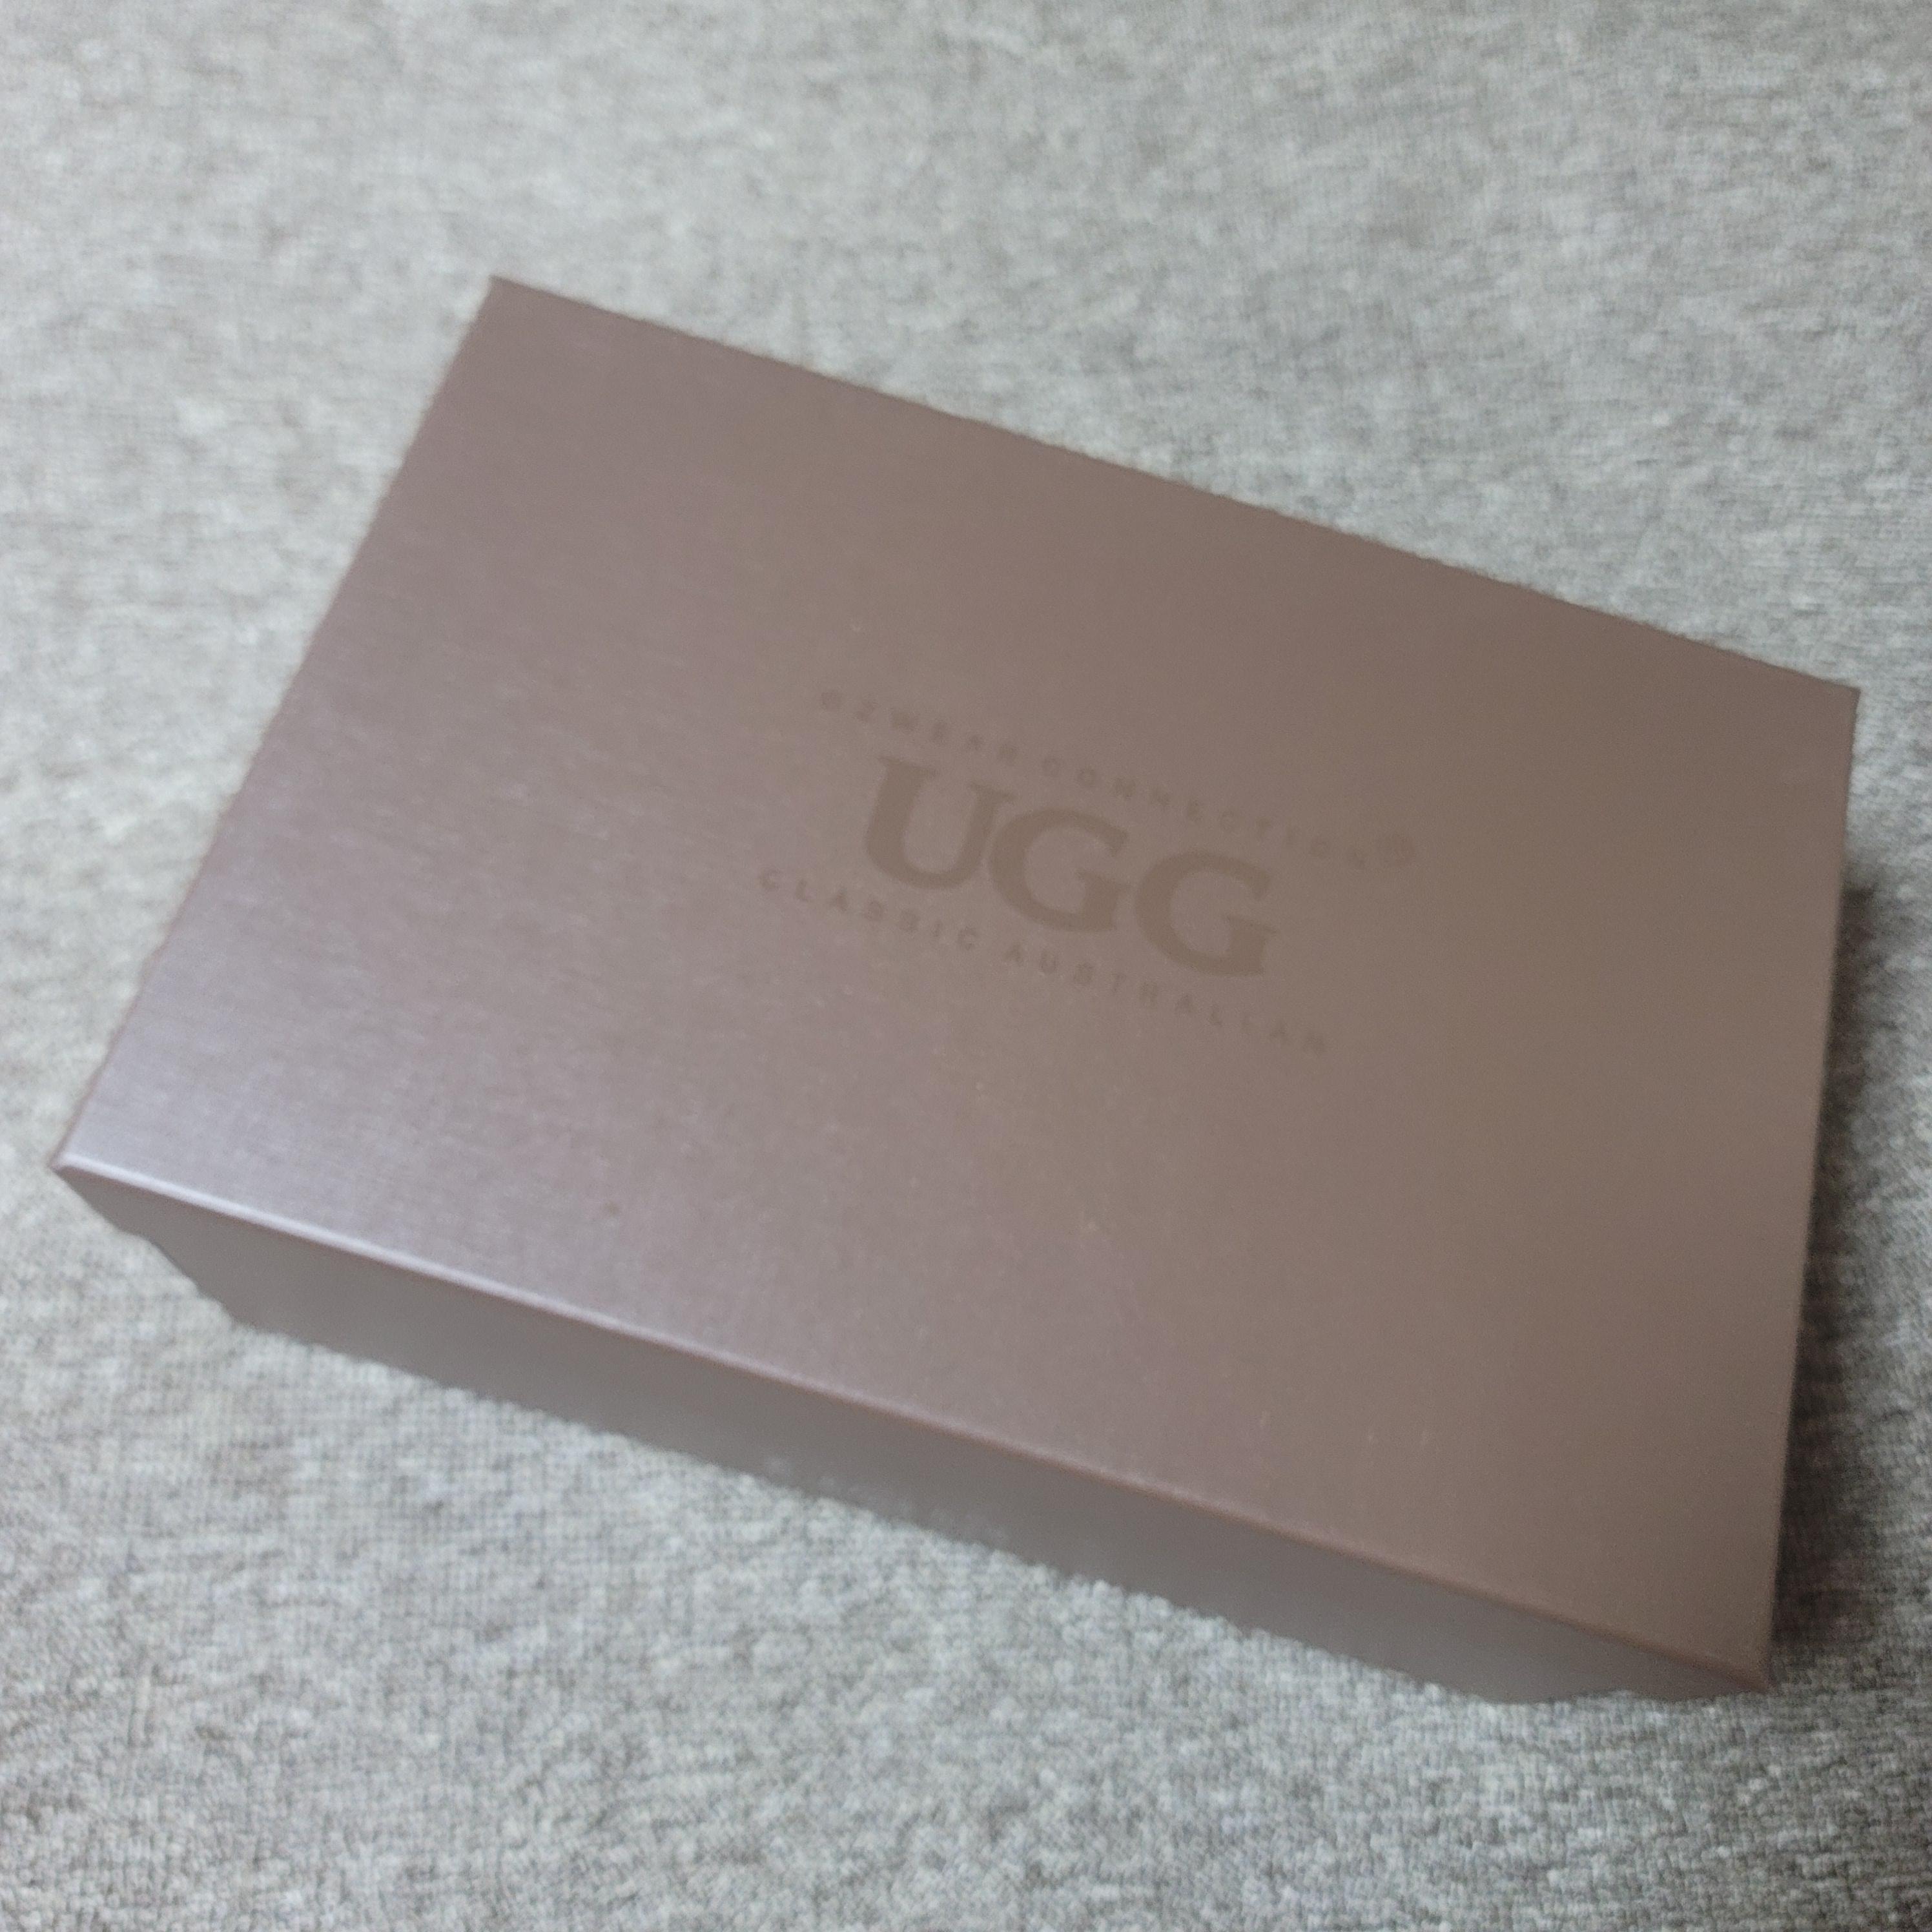 UGG 코케트 어그 슬리퍼 포장 상자